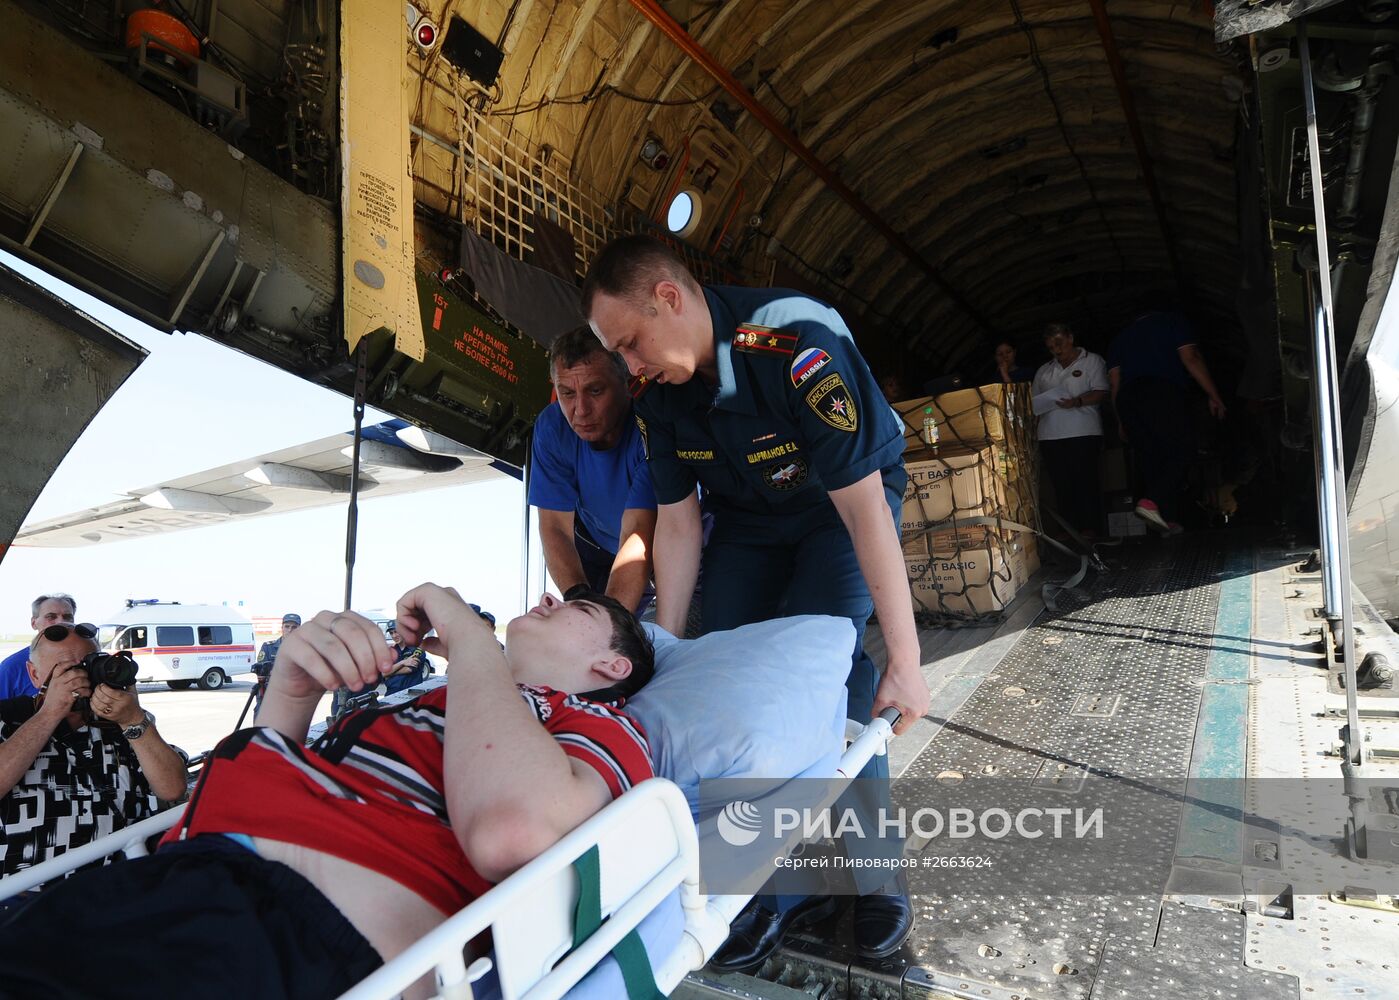 Дети из Донбасса отправлены на лечение в Москву спецбортом МЧС РФ